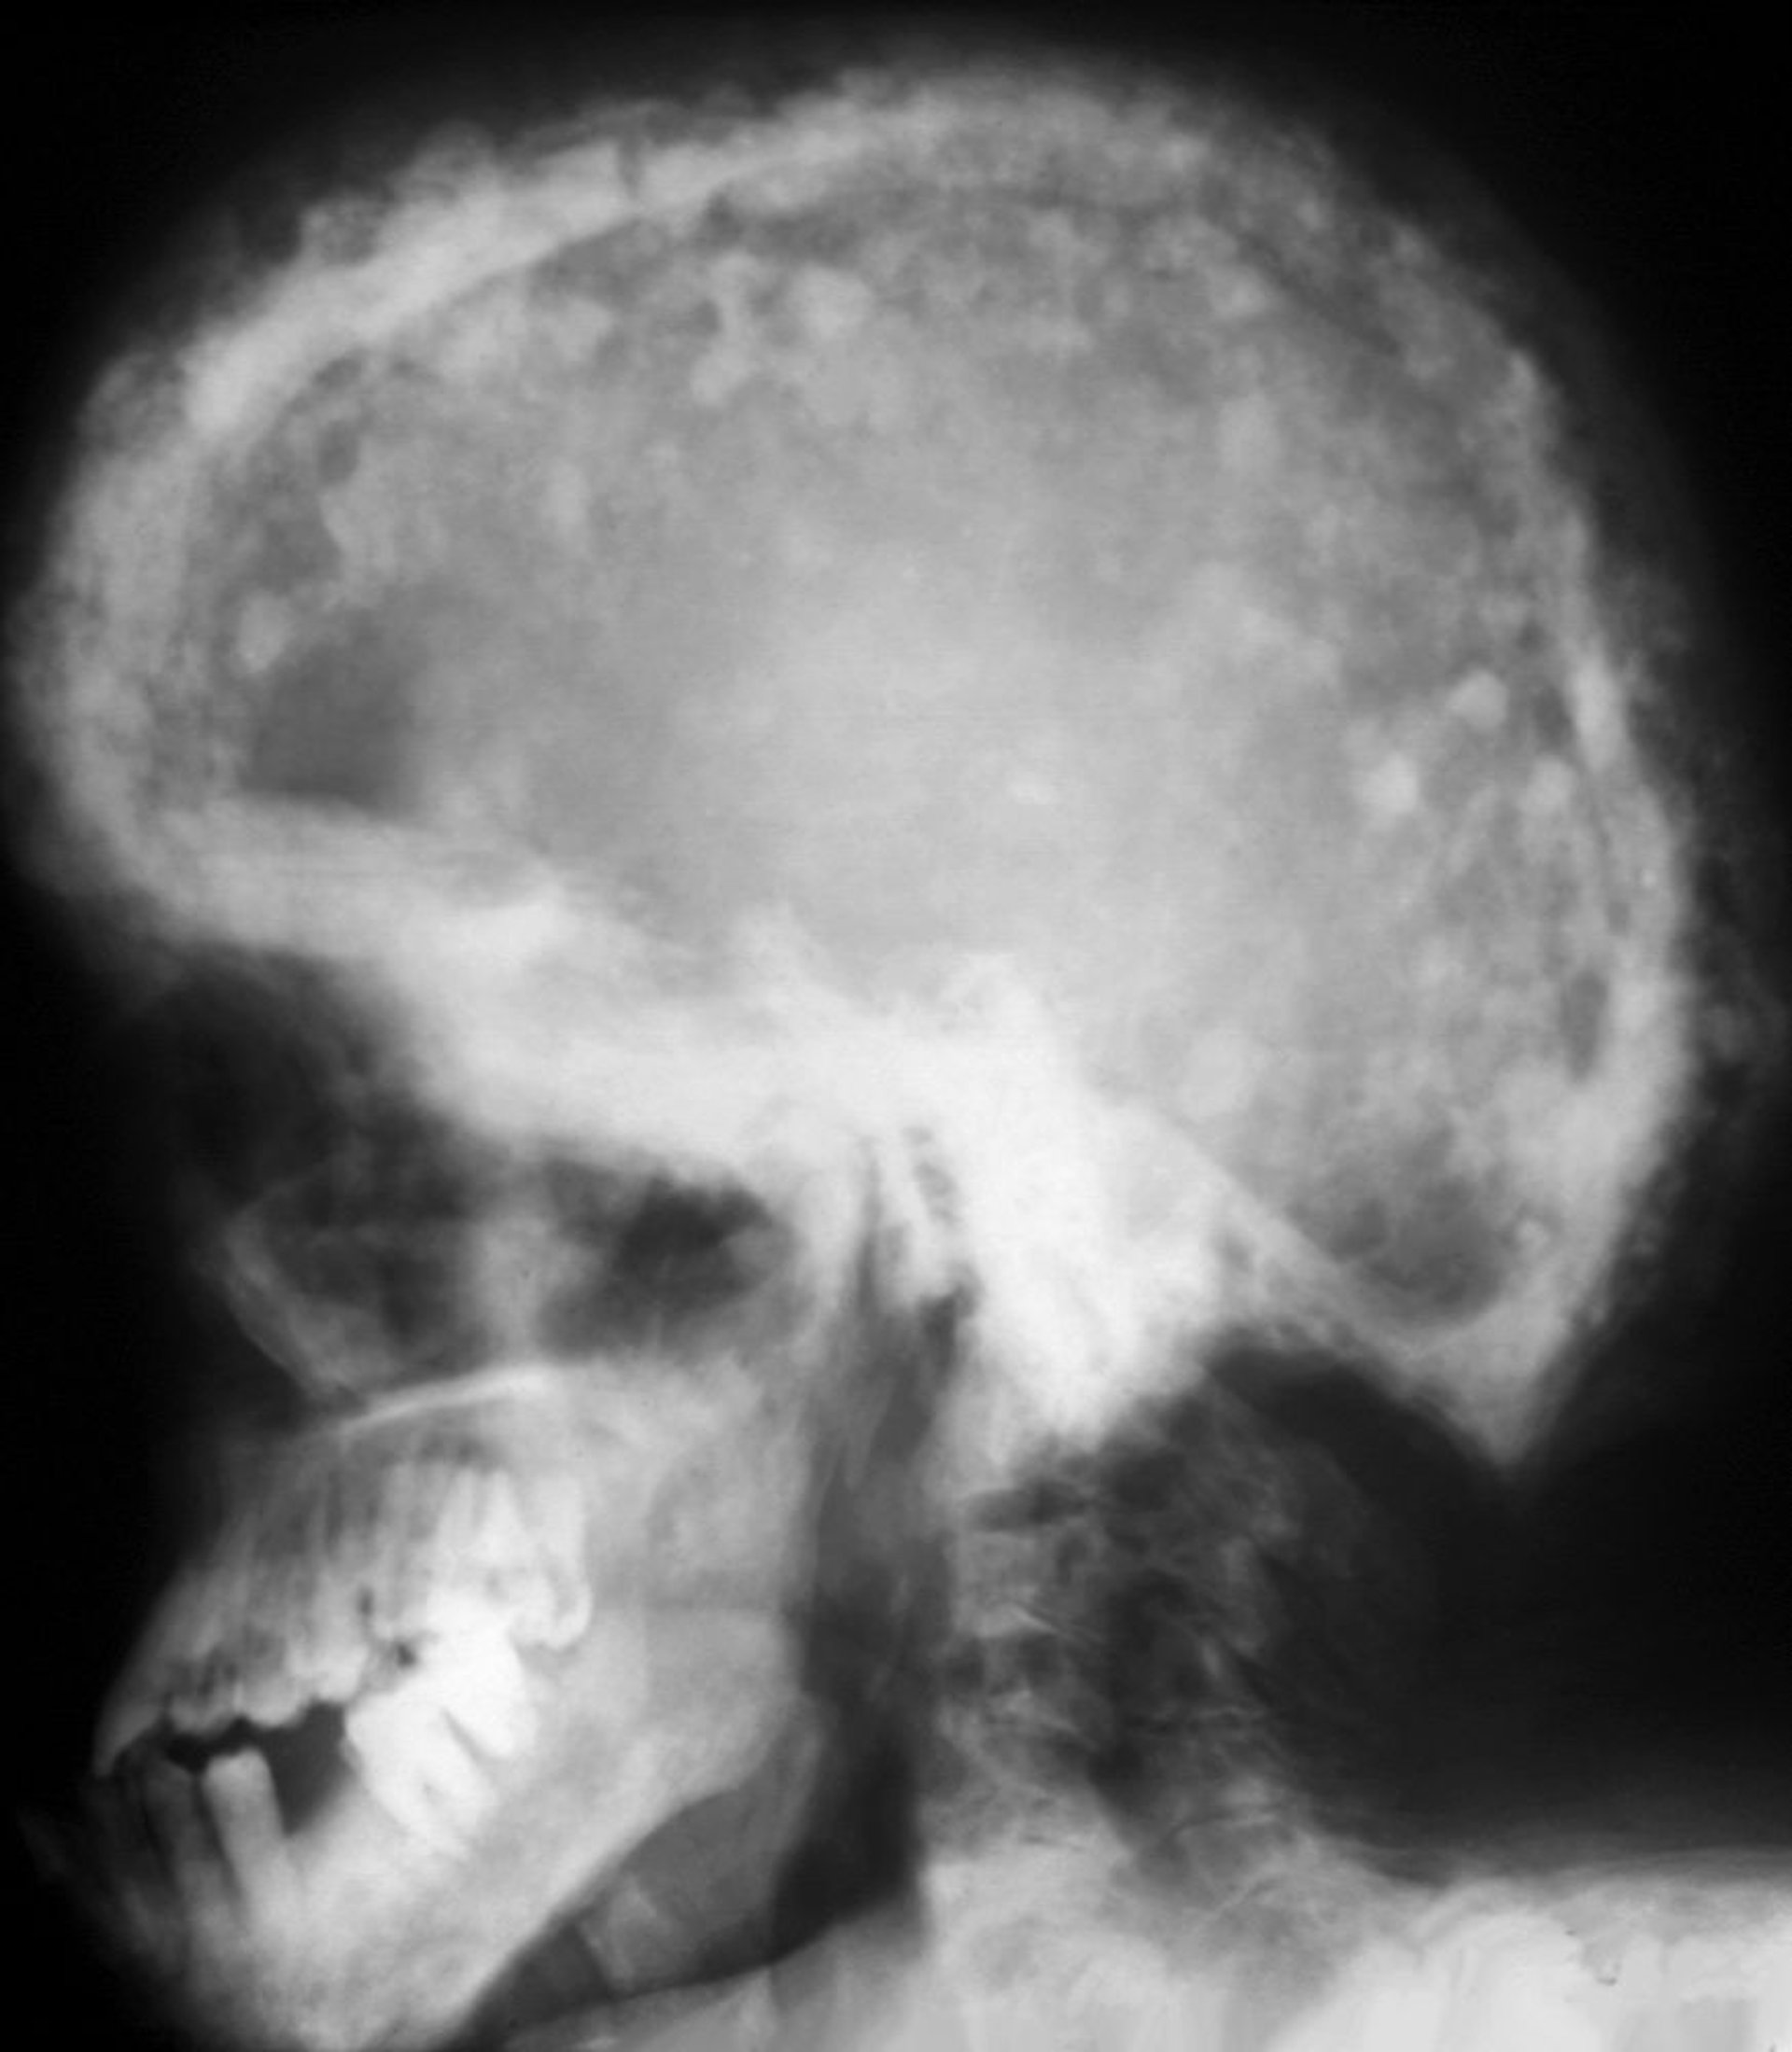 Röntgenaufnahme des Schädels bei Morbus Paget